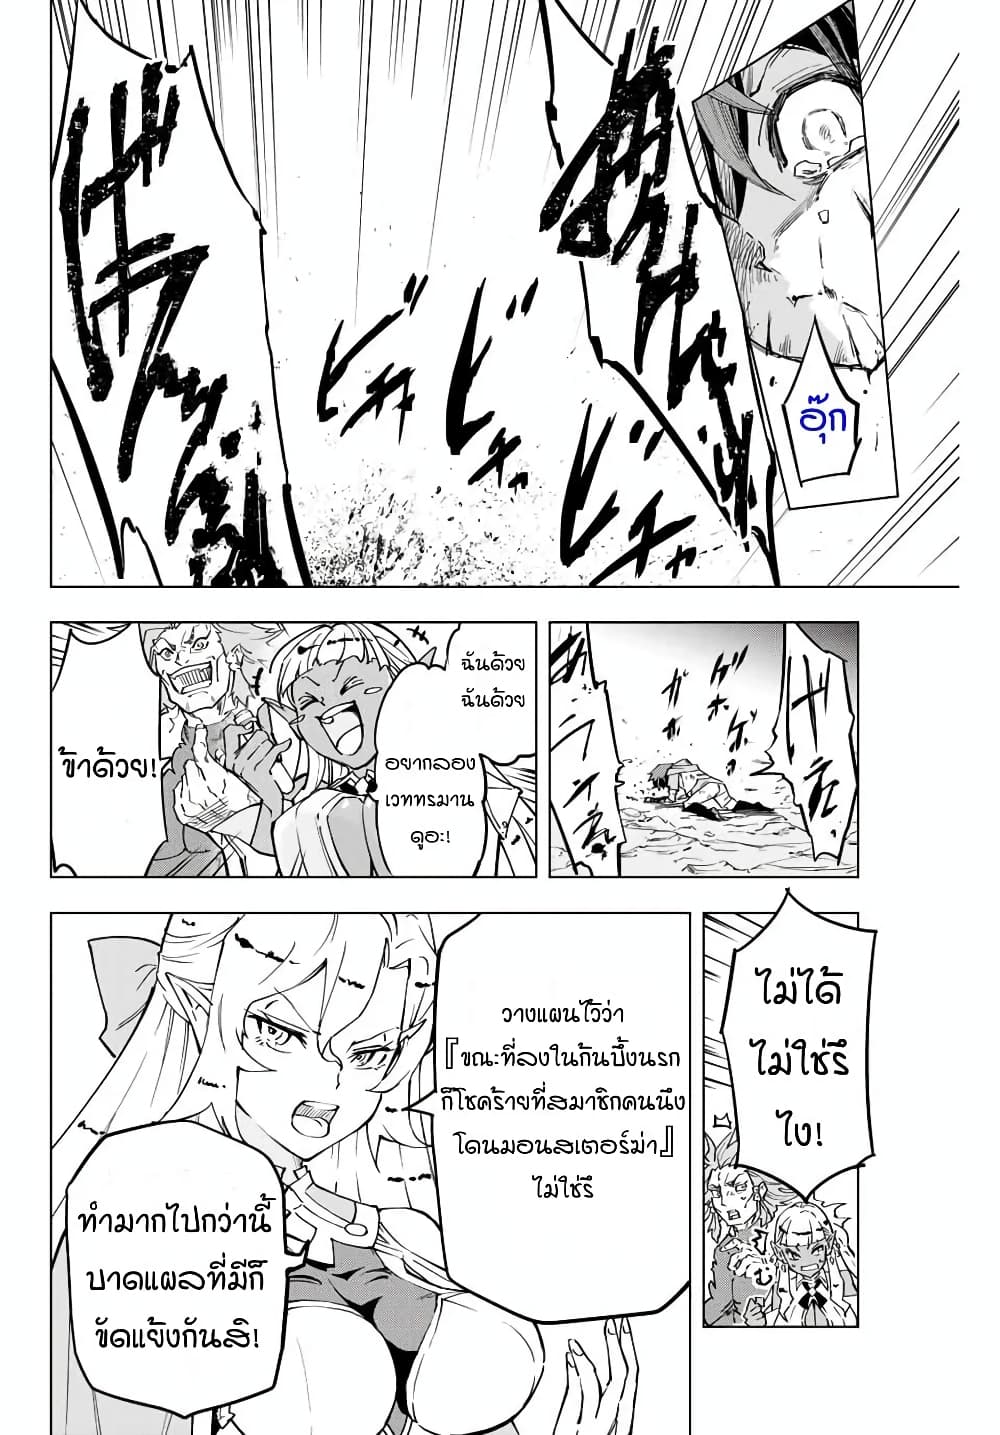 อ่านการ์ตูน Shinjiteita Nakama Tachi Ni Dungeon Okuchi De Korosare Kaketa ga Gift 『Mugen Gacha』 De Level 9999 No Nakama Tachi Wo Te Ni Irete Moto Party Member To Sekai Ni Fukushu & 『Zama A!』 Shimasu! 1 ภาพที่ 22